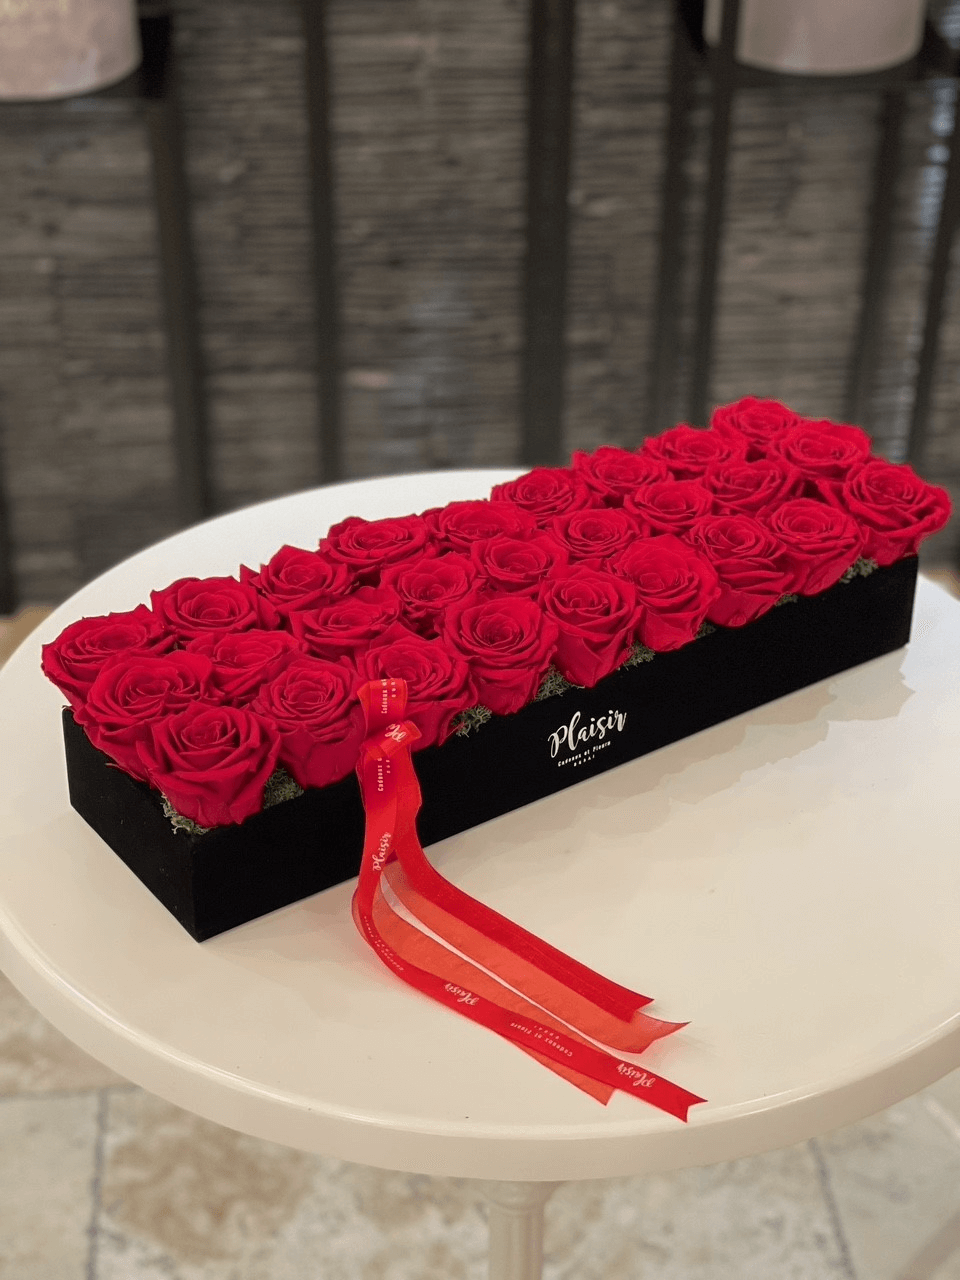 Fresh roses in a box arrangement in a glamorous velvet tray